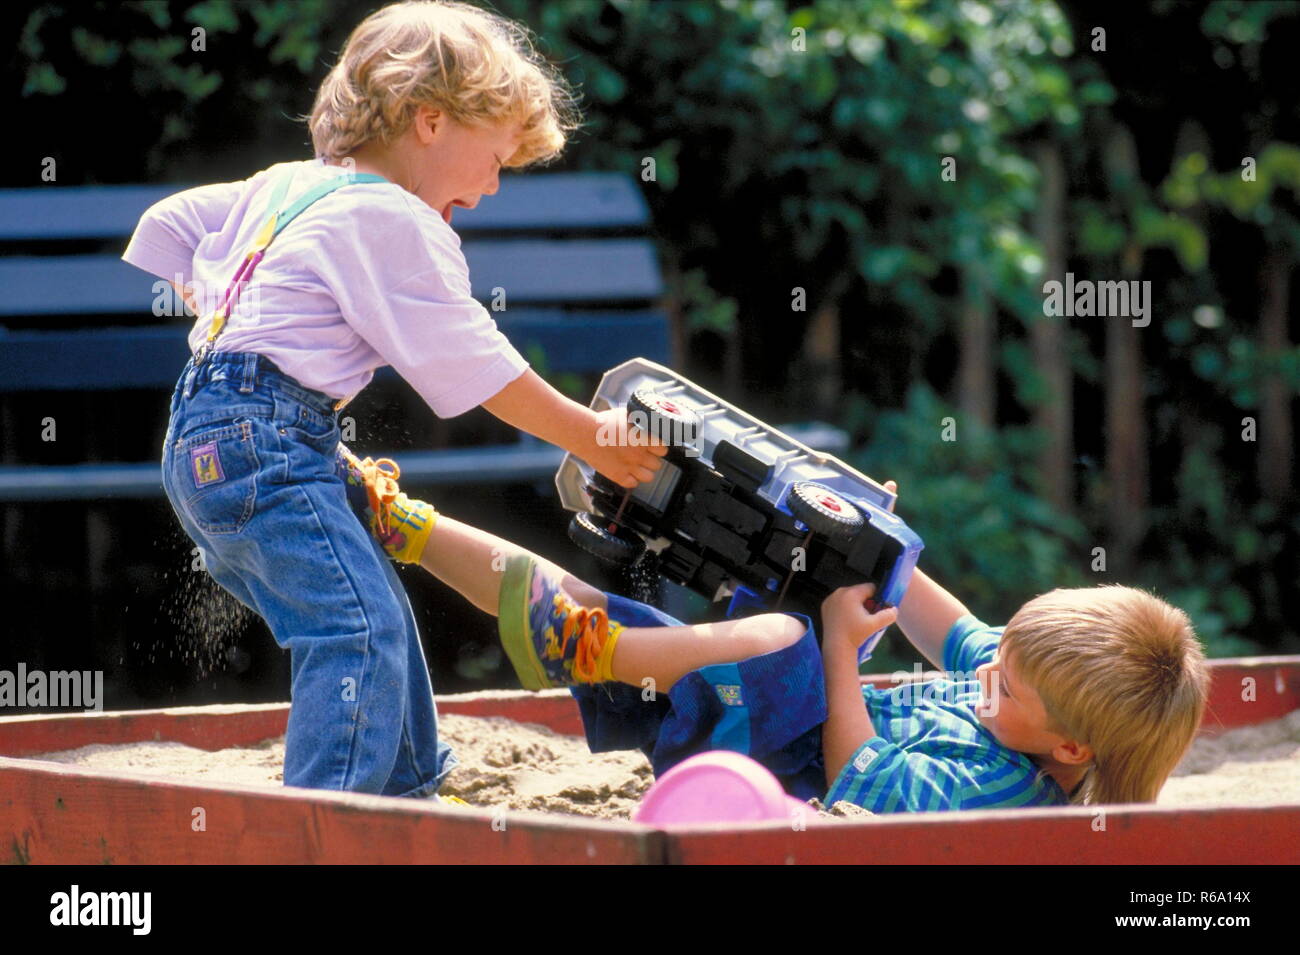 Portrait, Parkszene, 2 Jungen, 5 Jahre, streiten sich im Sandkasten um einen grossen Spielzeuglaster Stock Photo